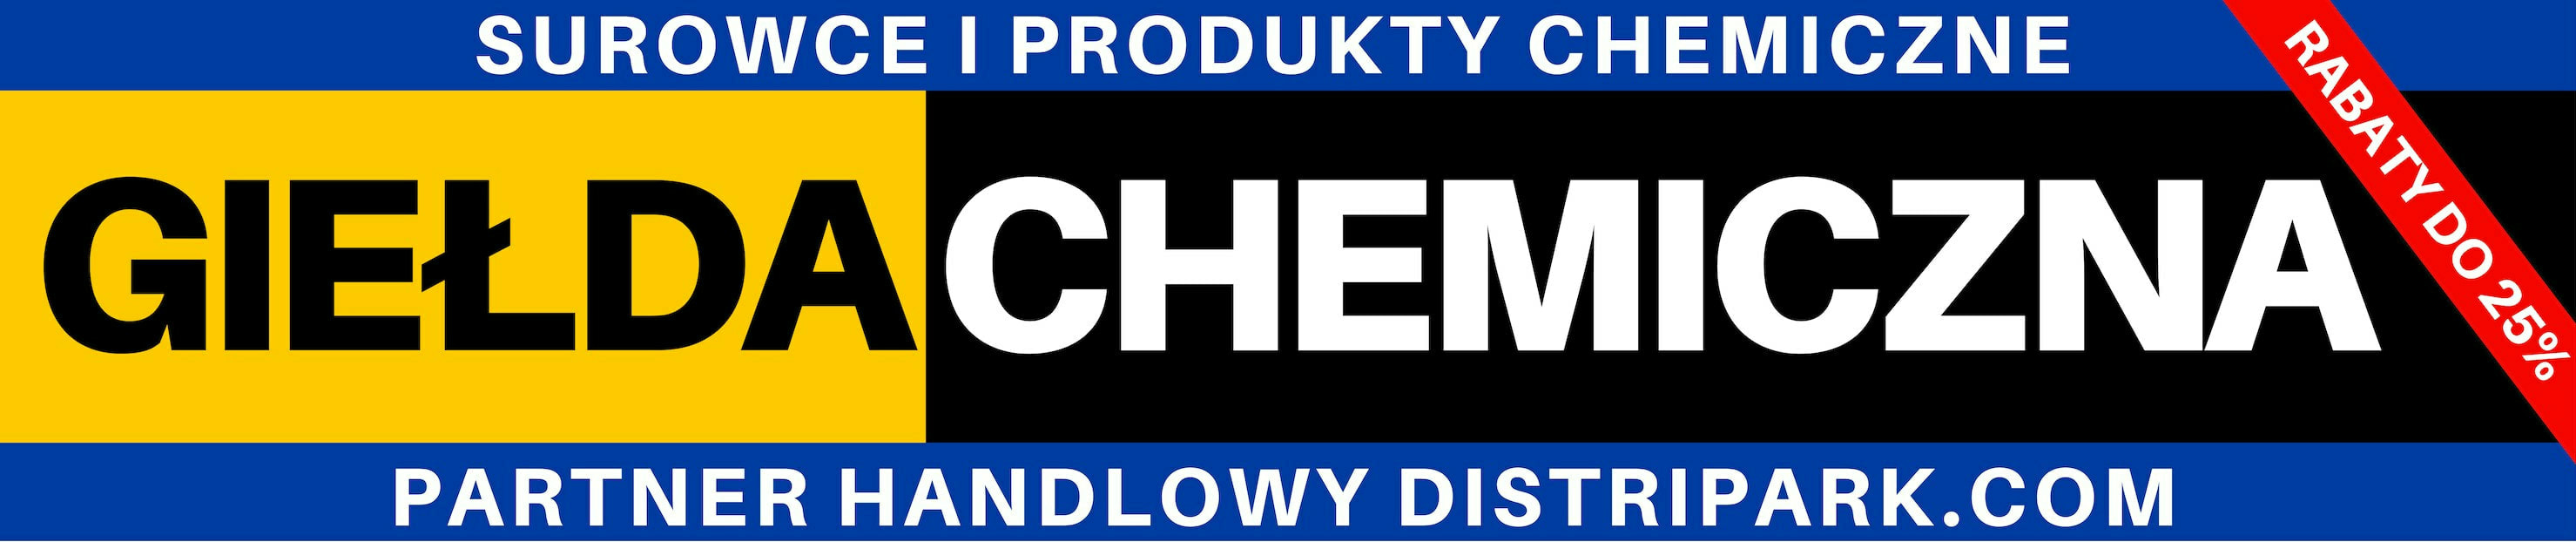 Giełda chemiczna. Surowce, półprodukty i produkty chemiczne. Handel B2B i handel detaliczny. Oferta hurtowa